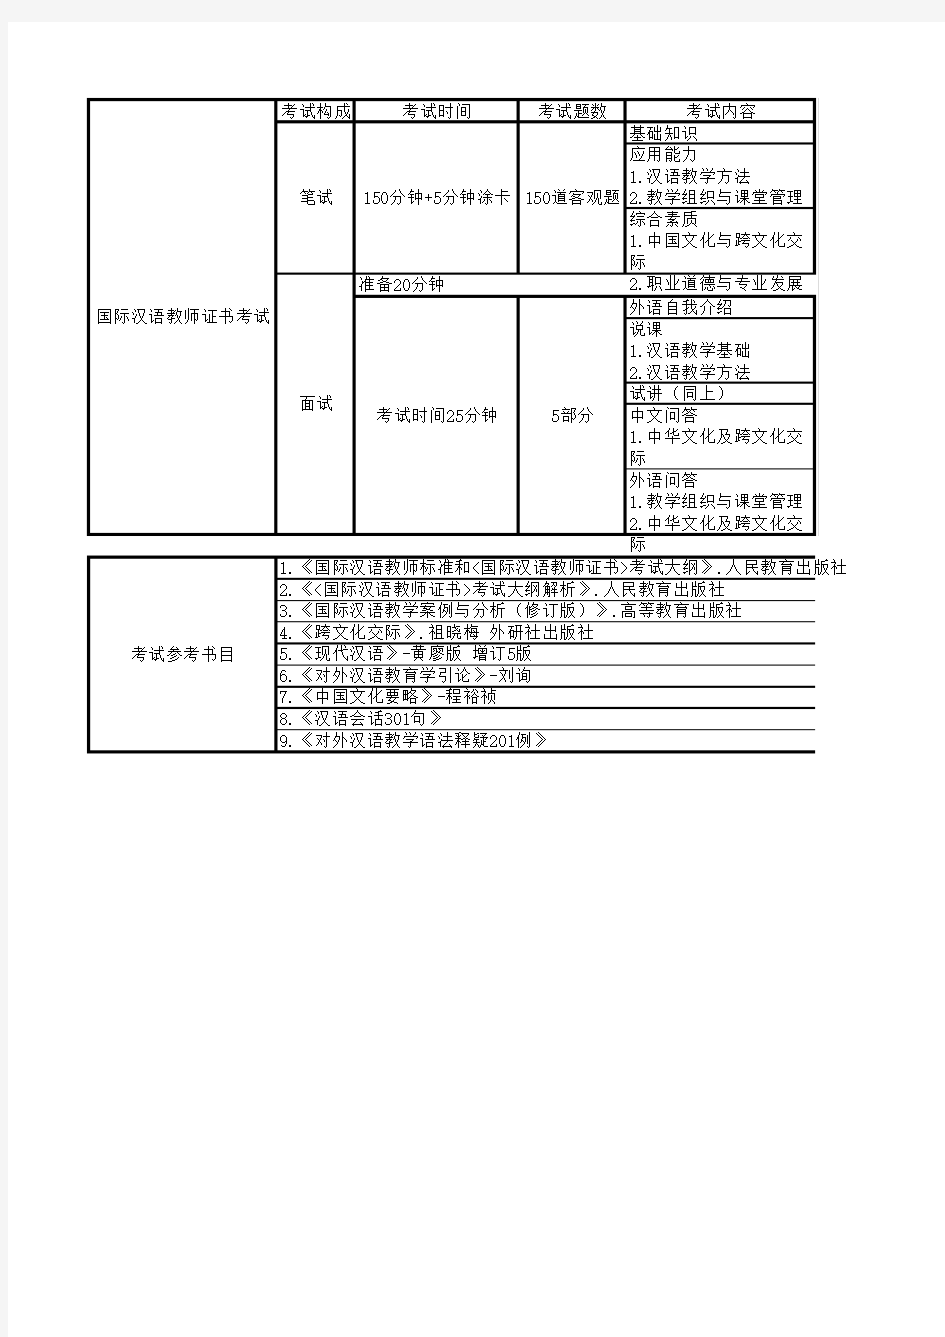 国际汉语教师证书考试内容及参考书目